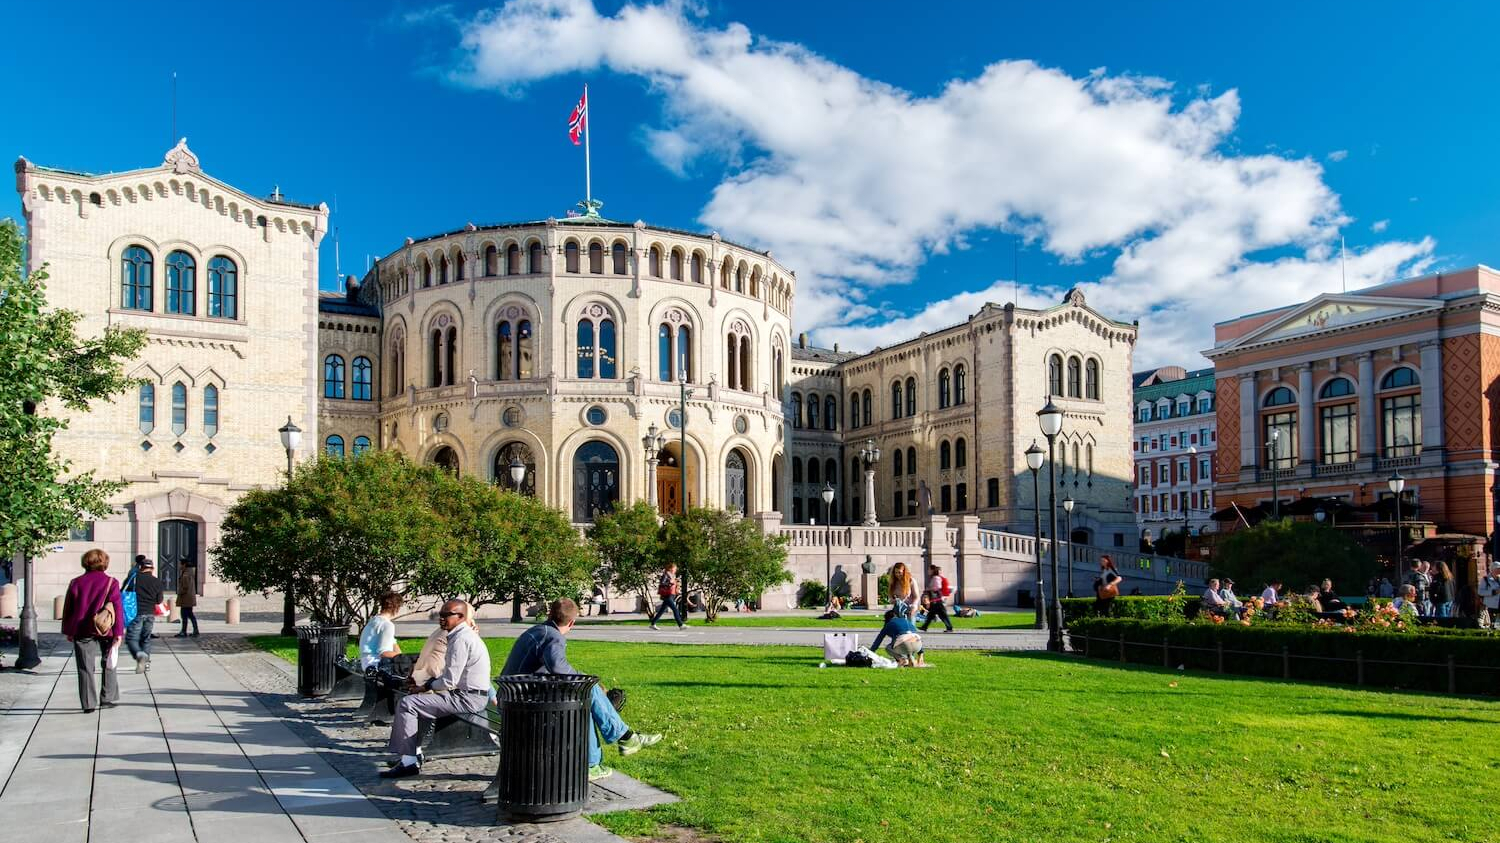 Der Platz vor dem norwegischen Parlament bei sommerlichem Wetter. Viele Menschen sitzen auf Bänken.